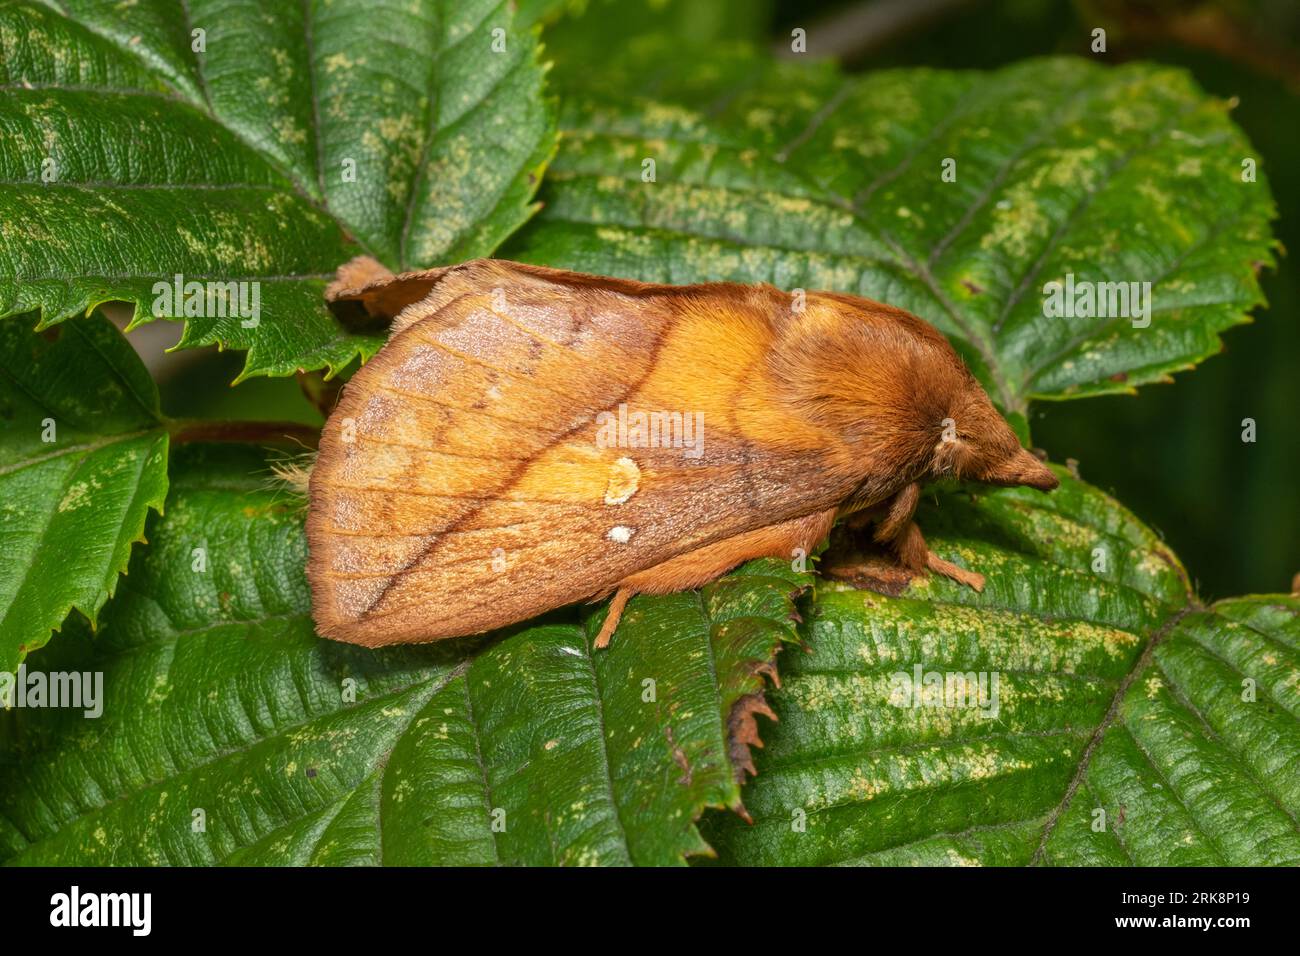 Euthrix potatoria, die trinkende Motte, ruht am frühen Morgen auf einem nassen Blatt. Stockfoto